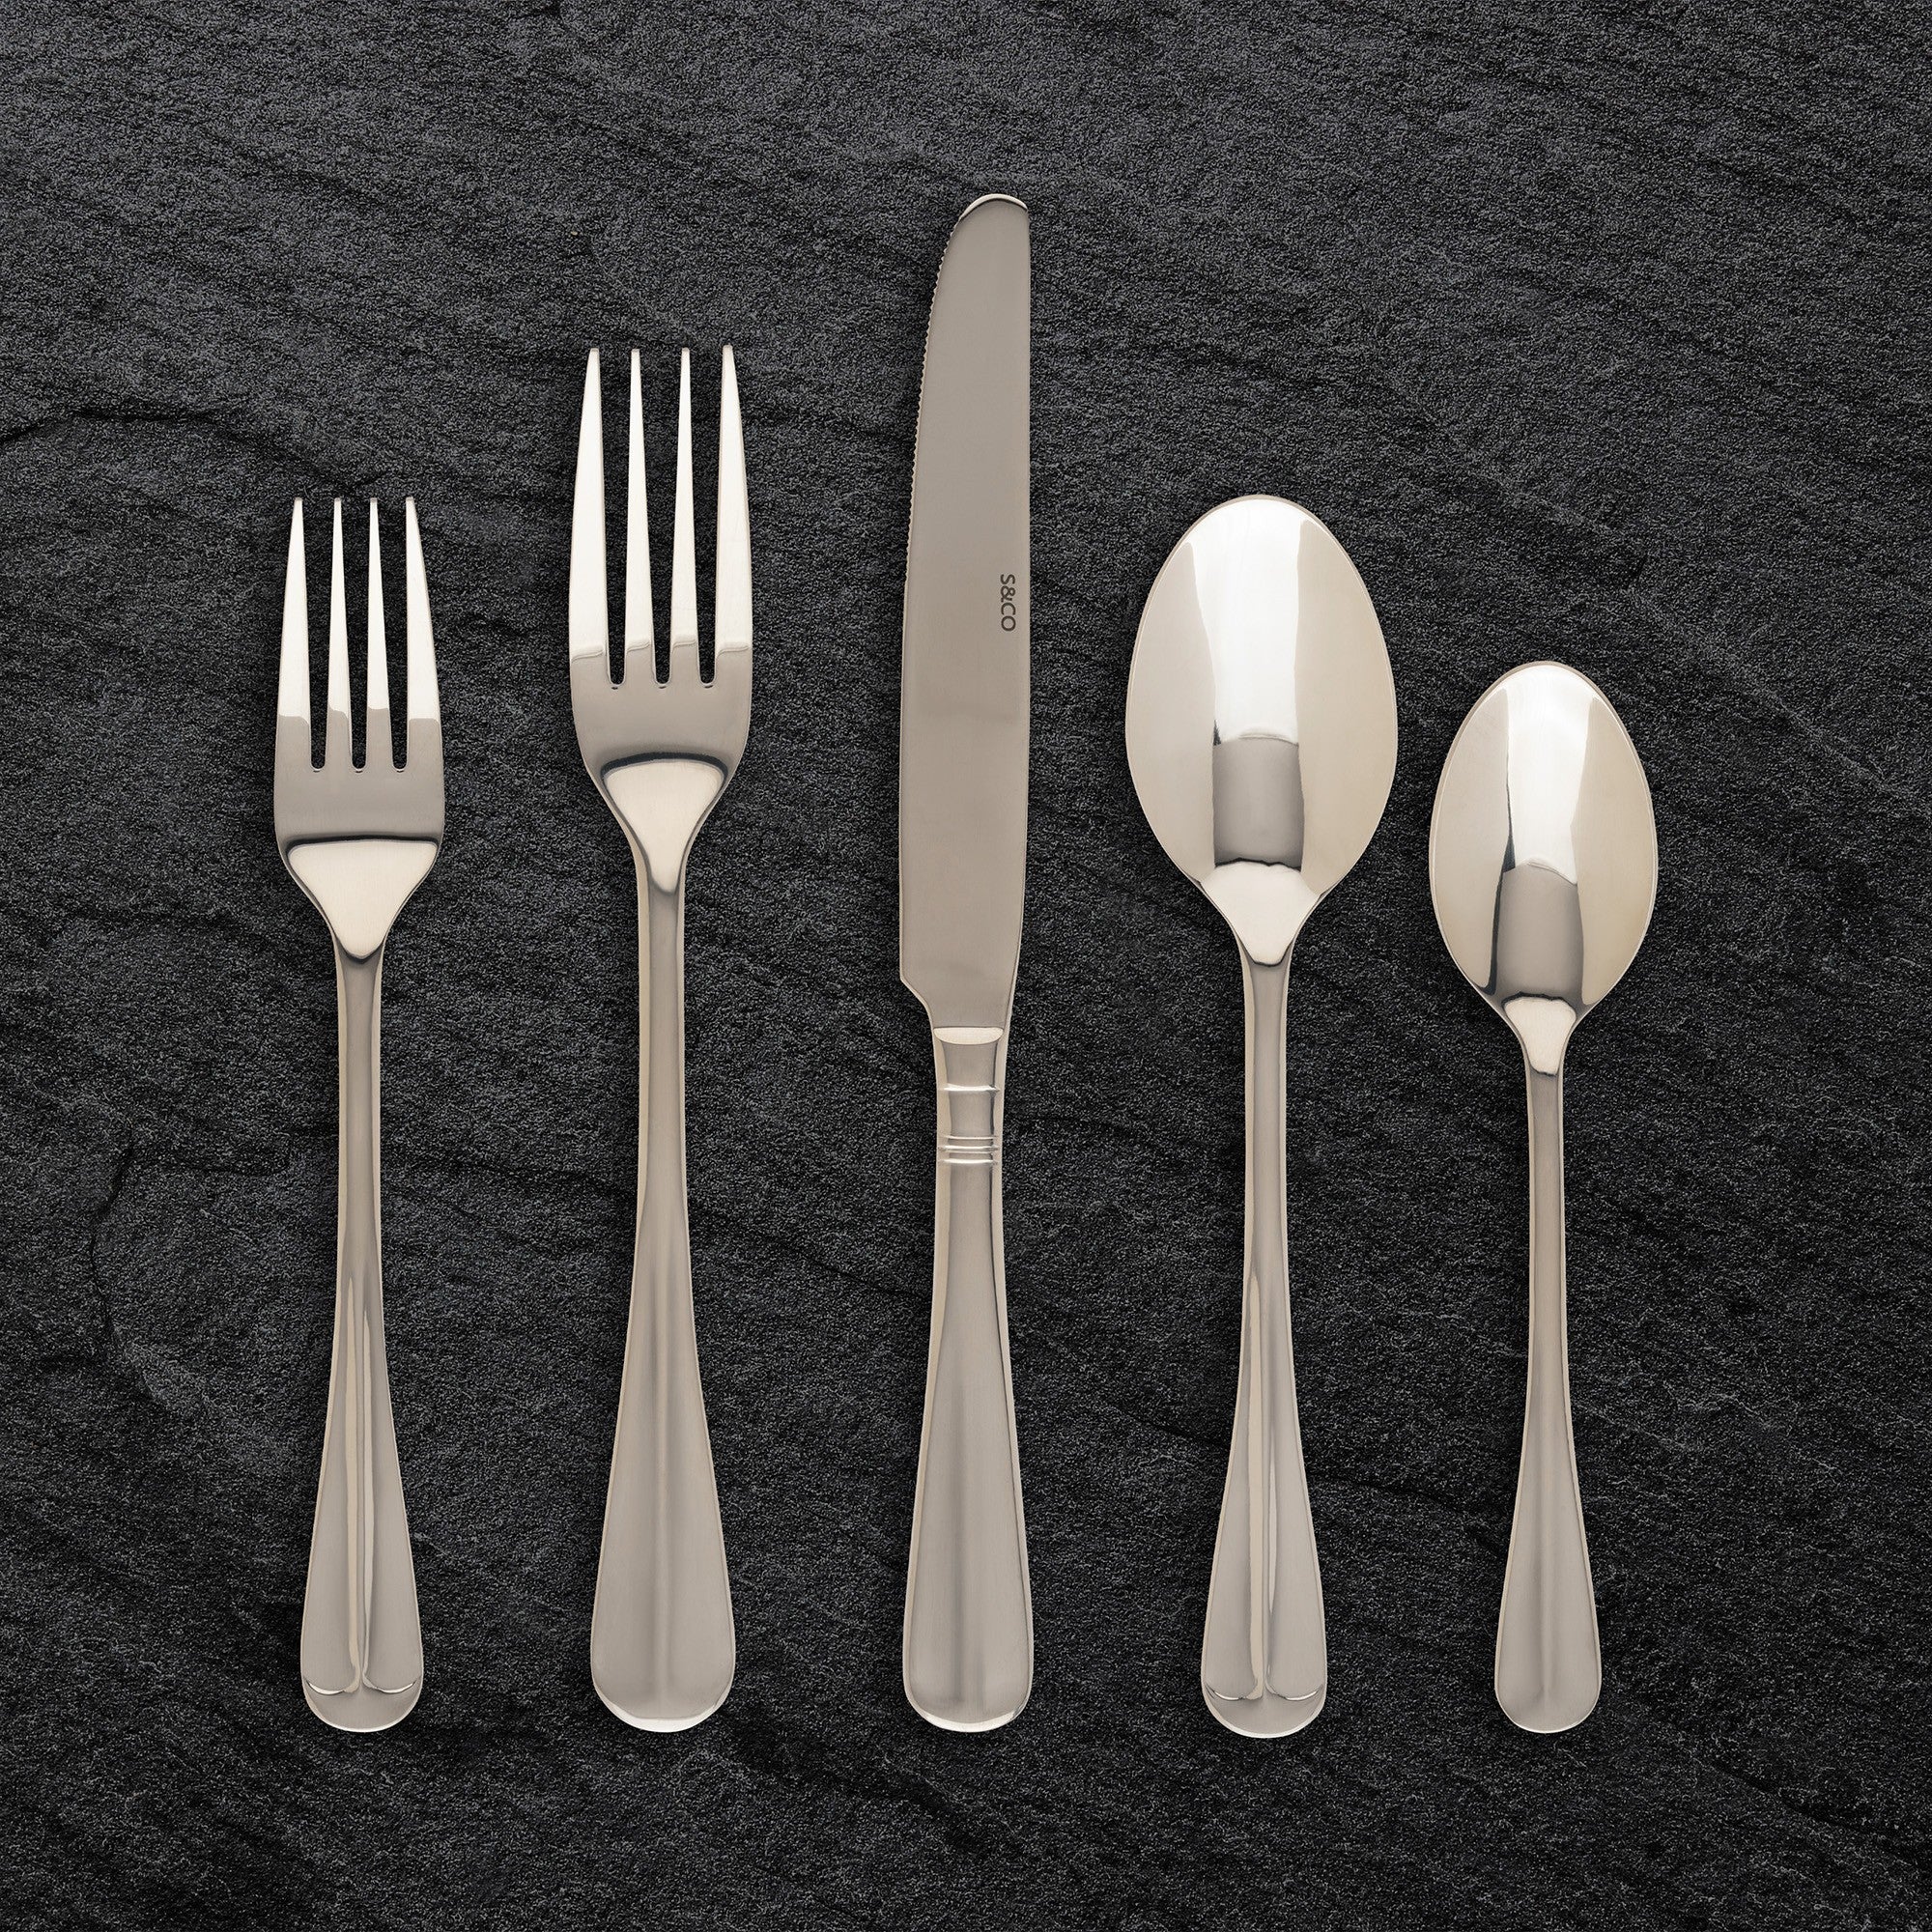 title:Safdie & Co. Gourmet Flatware Stainless Steel 20PC Berkley;color:Silver